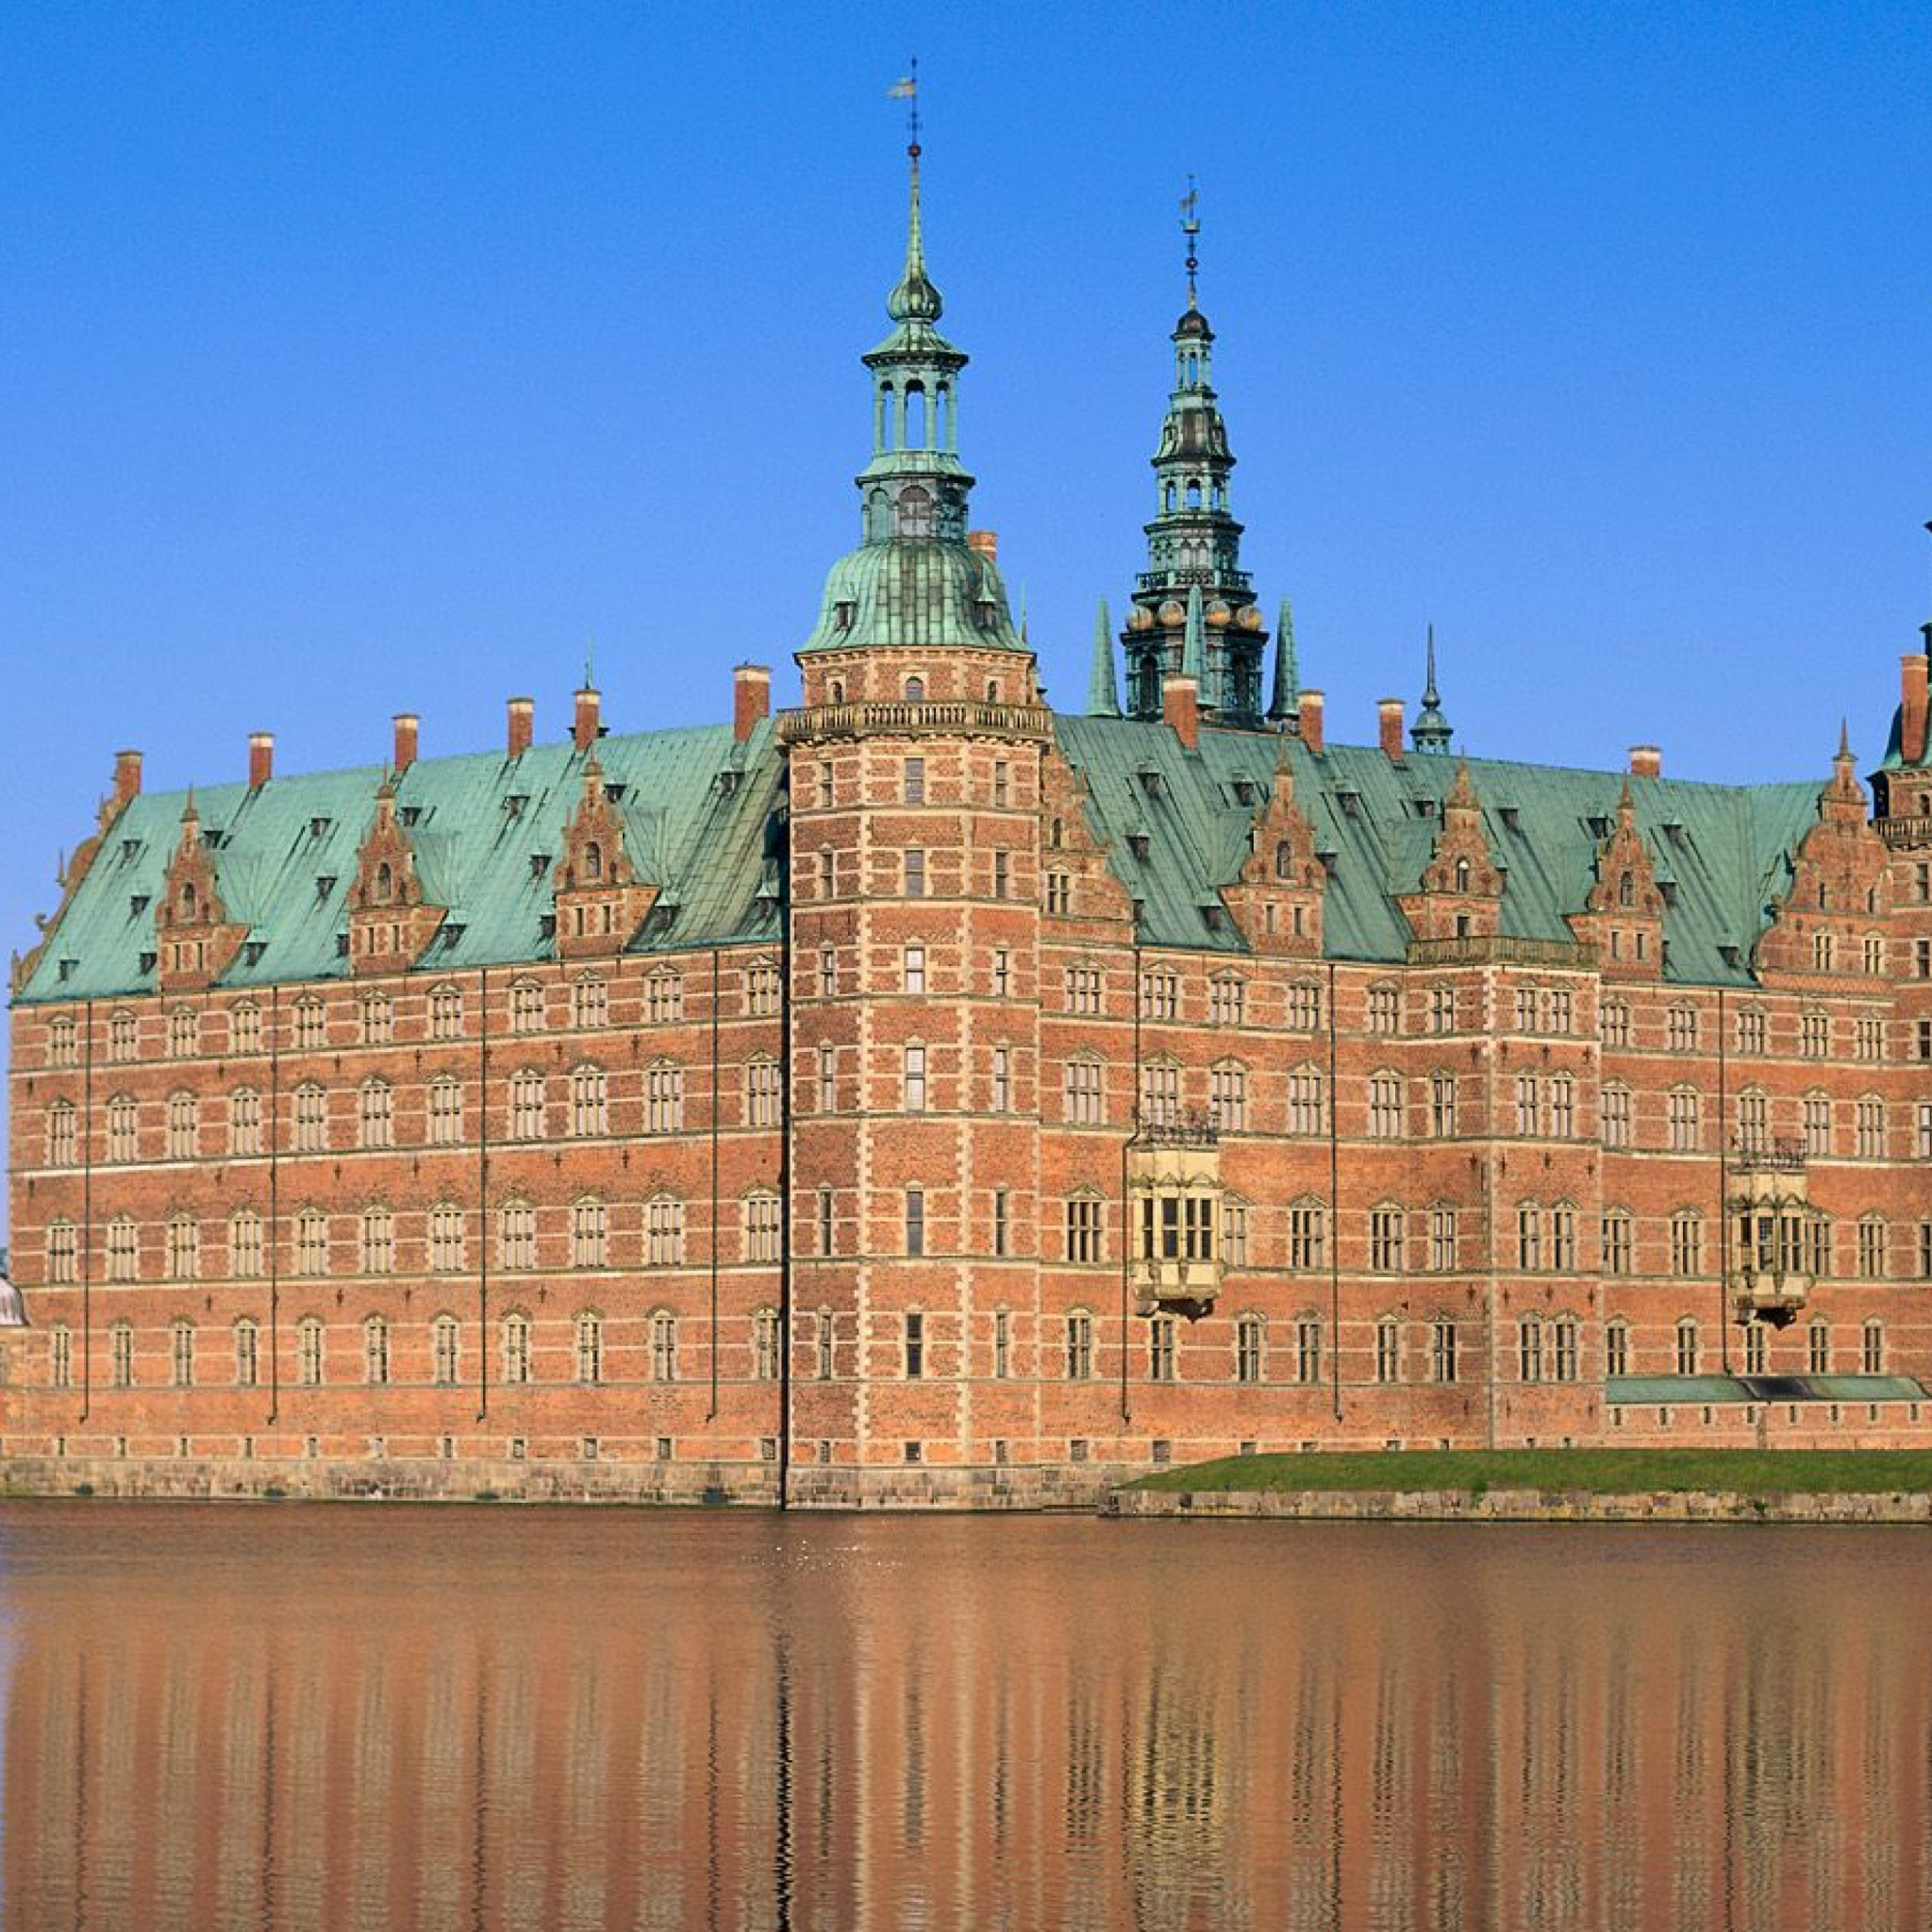 Название стран достопримечательности. Замок Фредериксборг (г. Хиллеред). Дворец Фредериксборг Копенгаген.